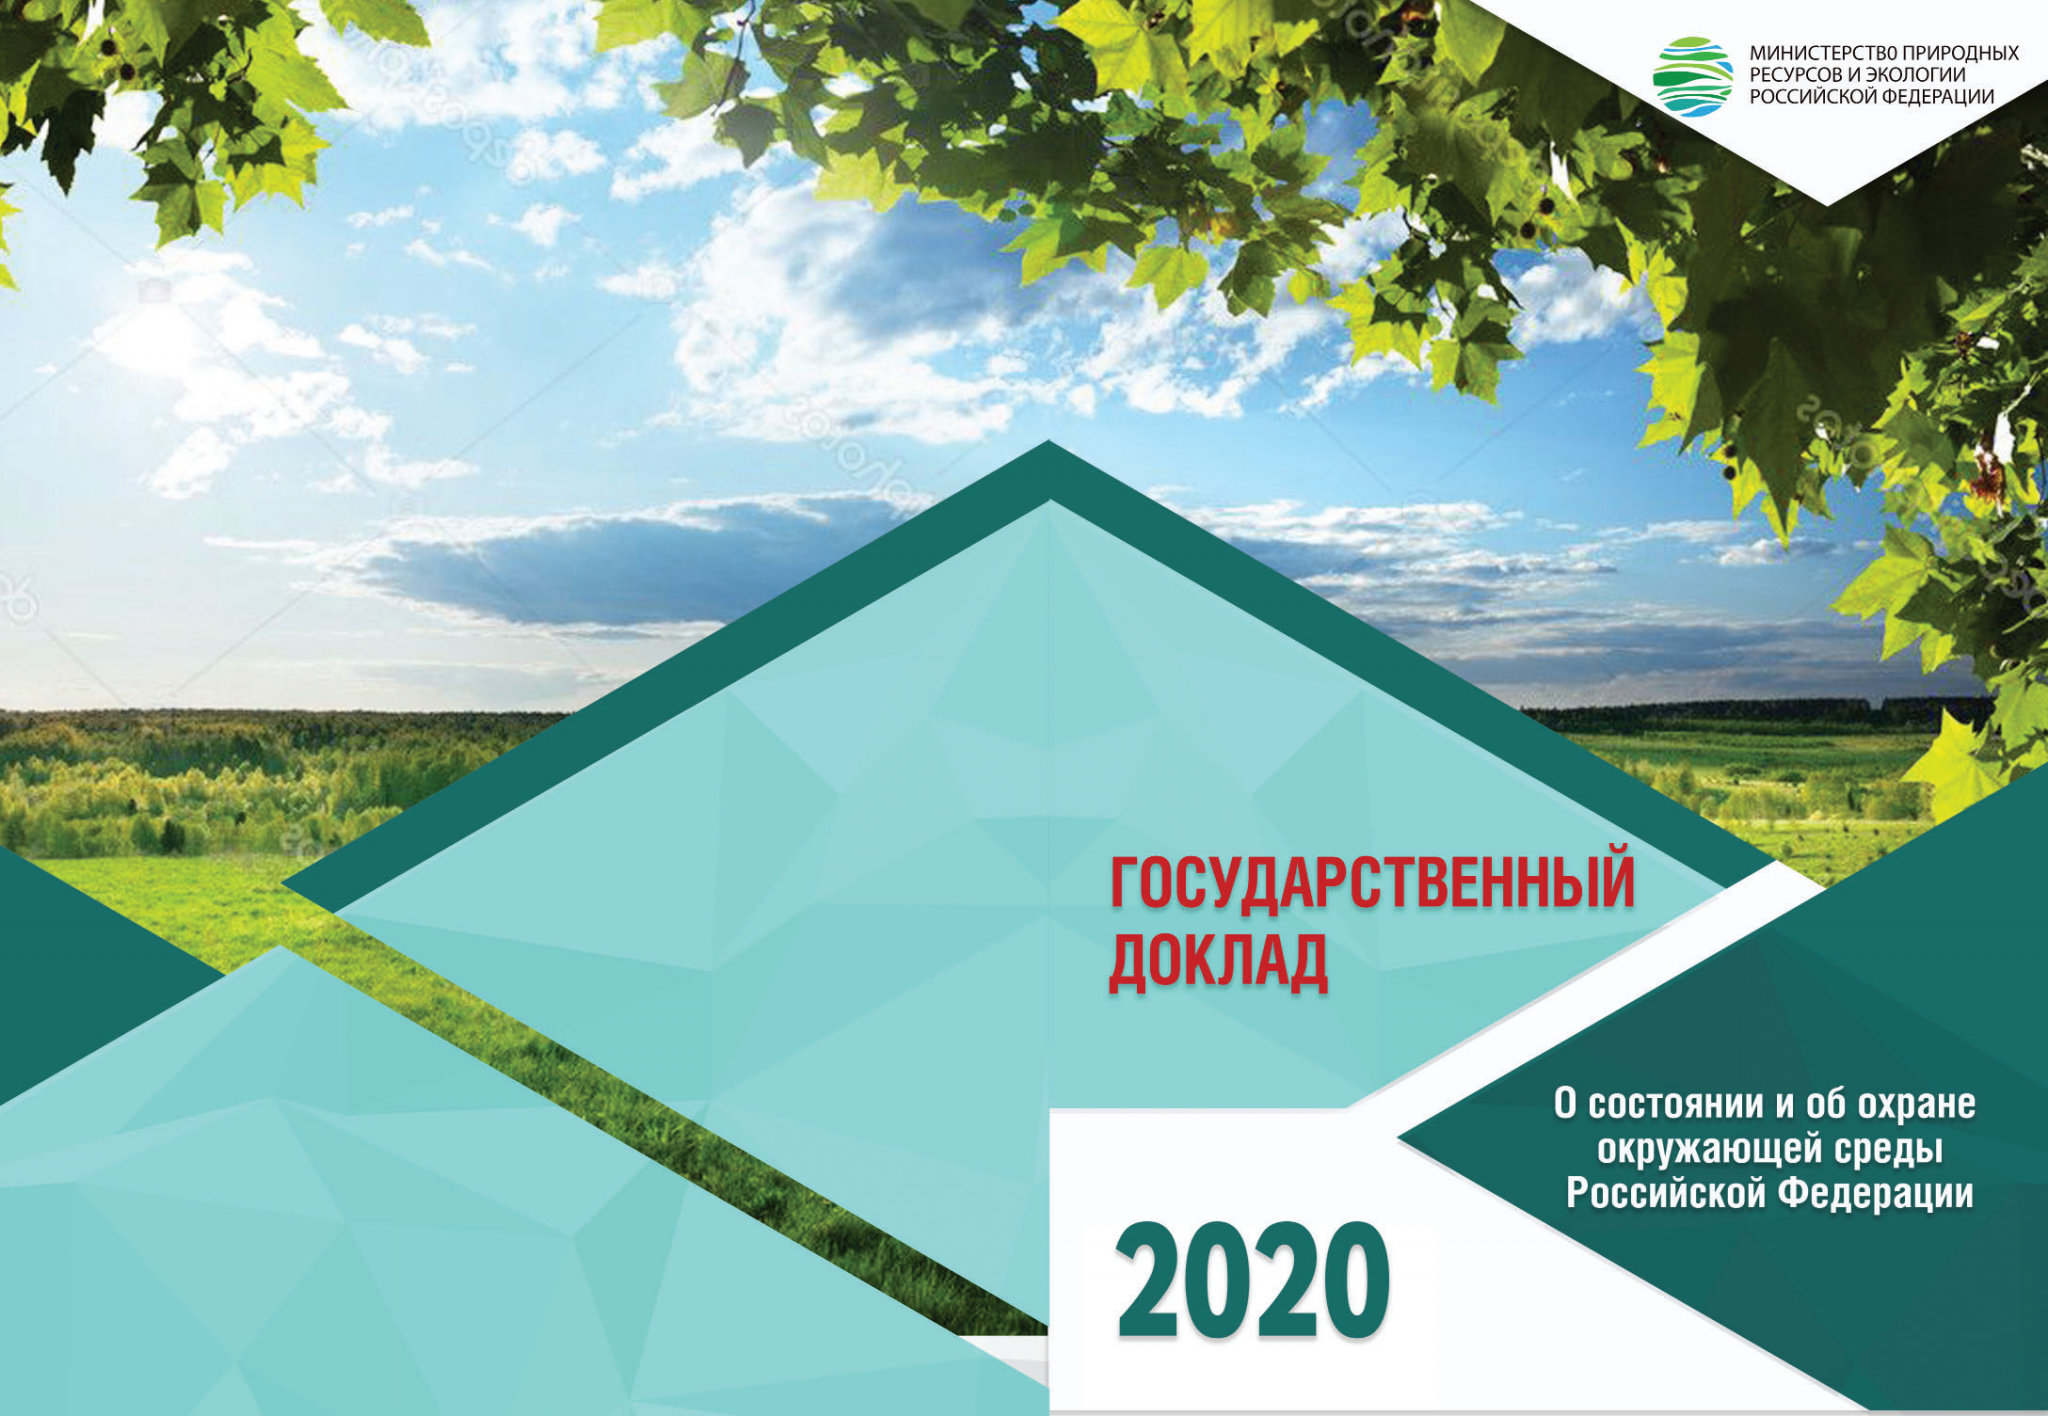 Государственный доклад о состоянии окружающей среды 2022